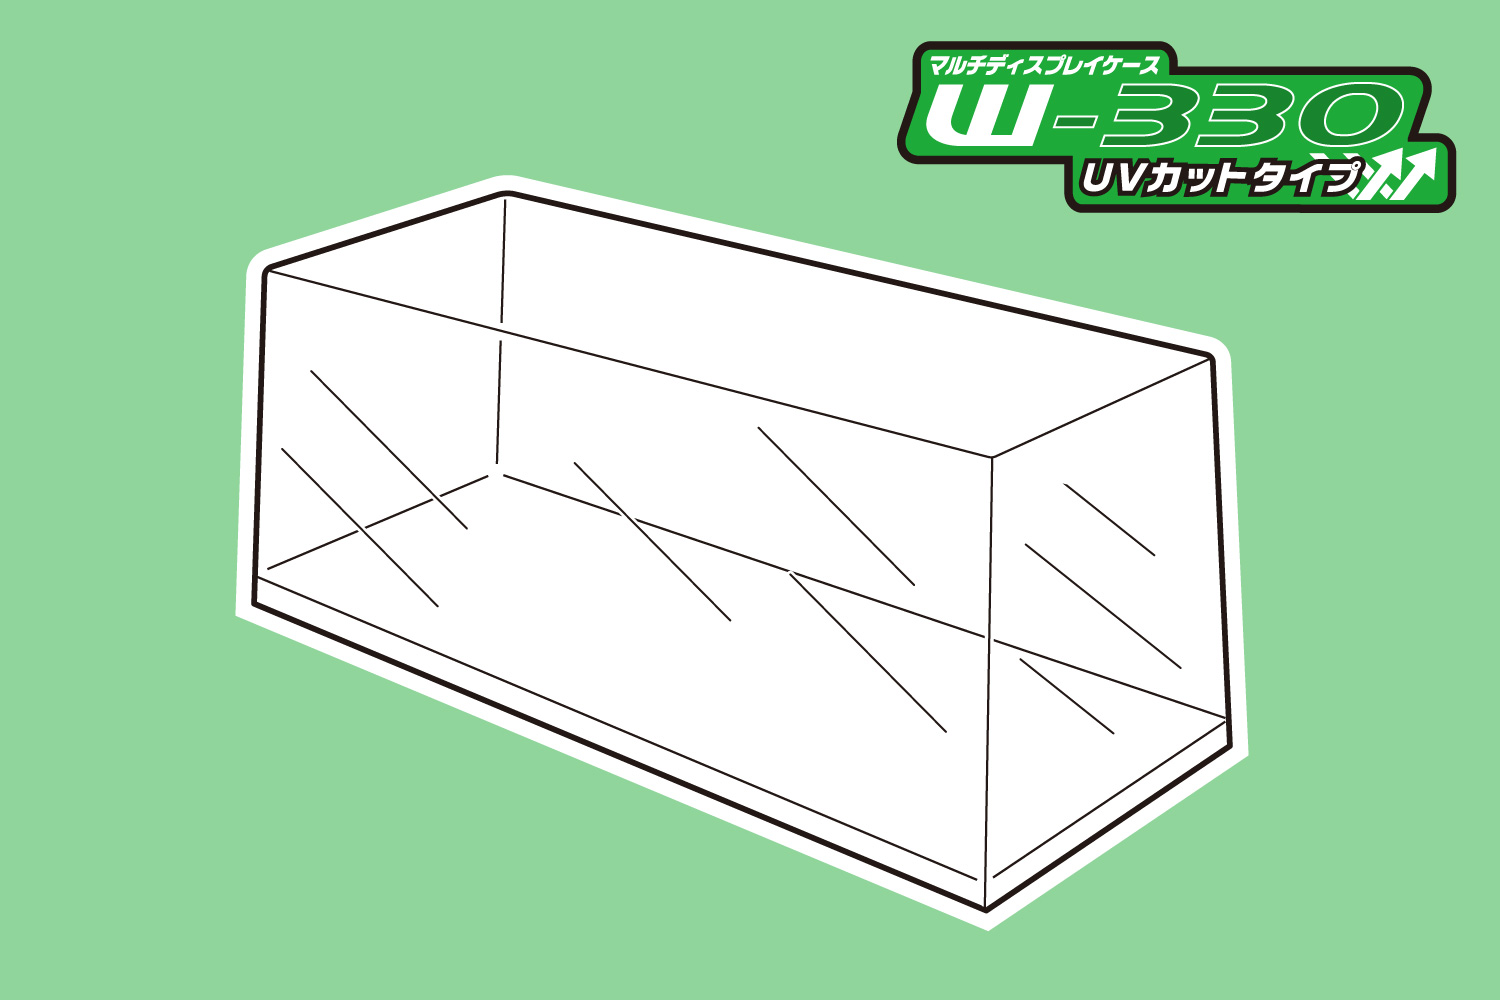 マルチディスプレイケースW330 (UVカットタイプ) 【大型ディスプレイケース No.2】画像